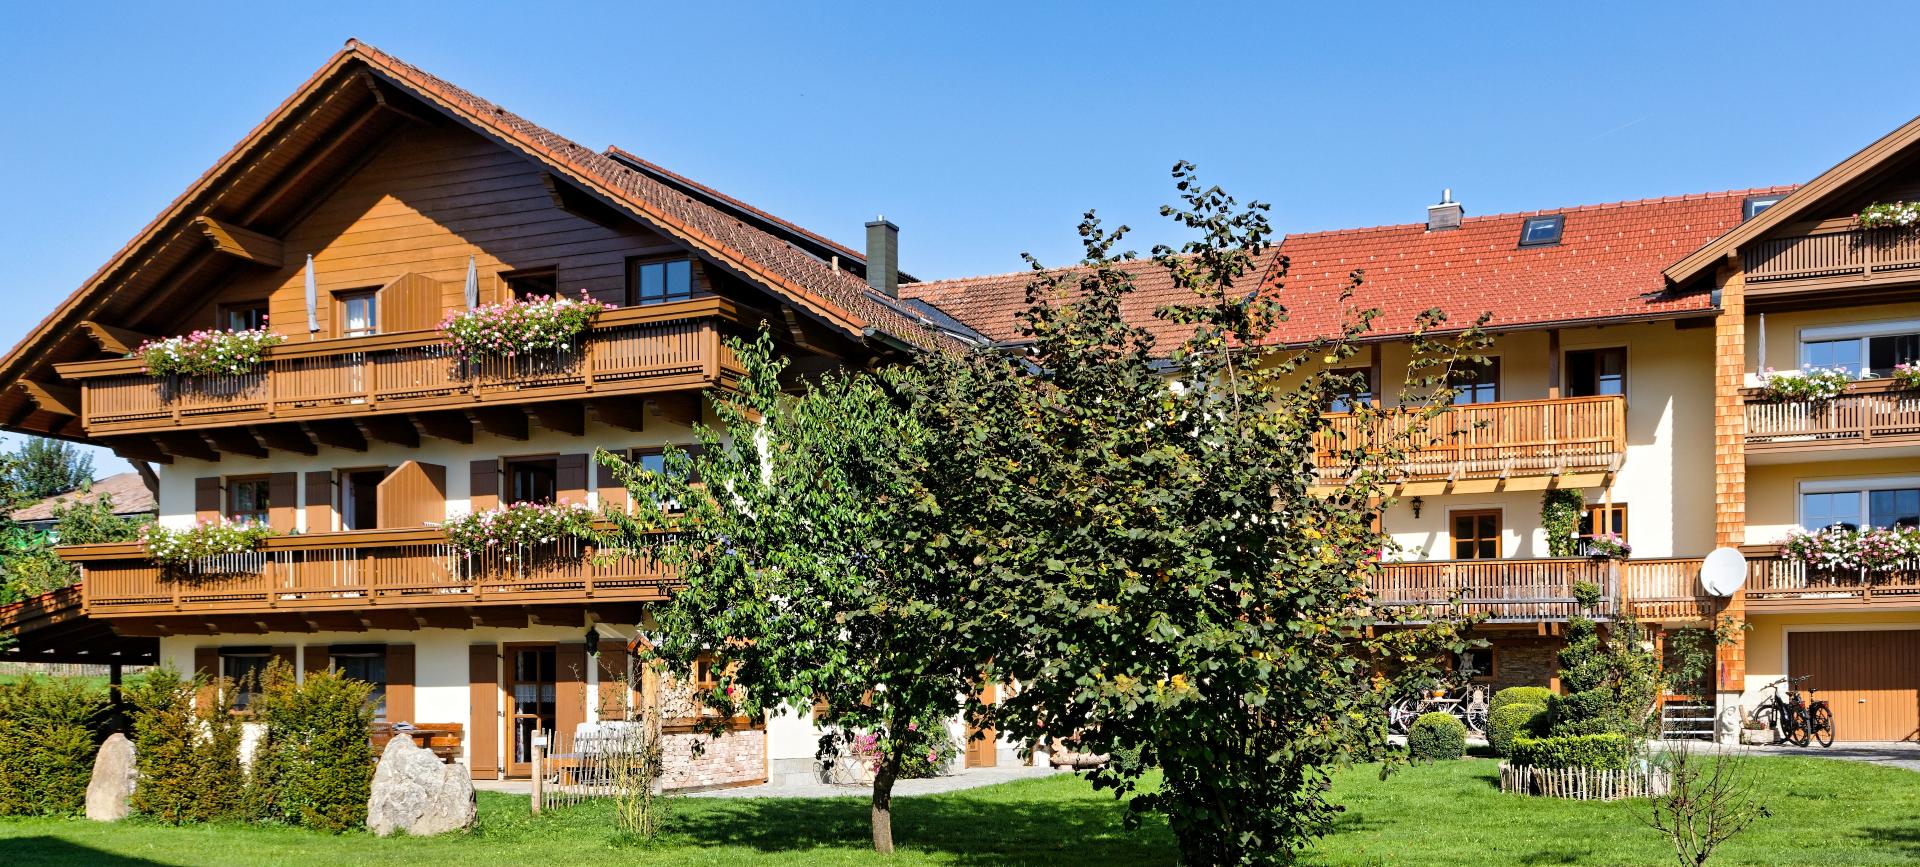 Bauernhof Wenzl (Zwiesel). Falkenstein Ferienhaus im Bayerischer Wald